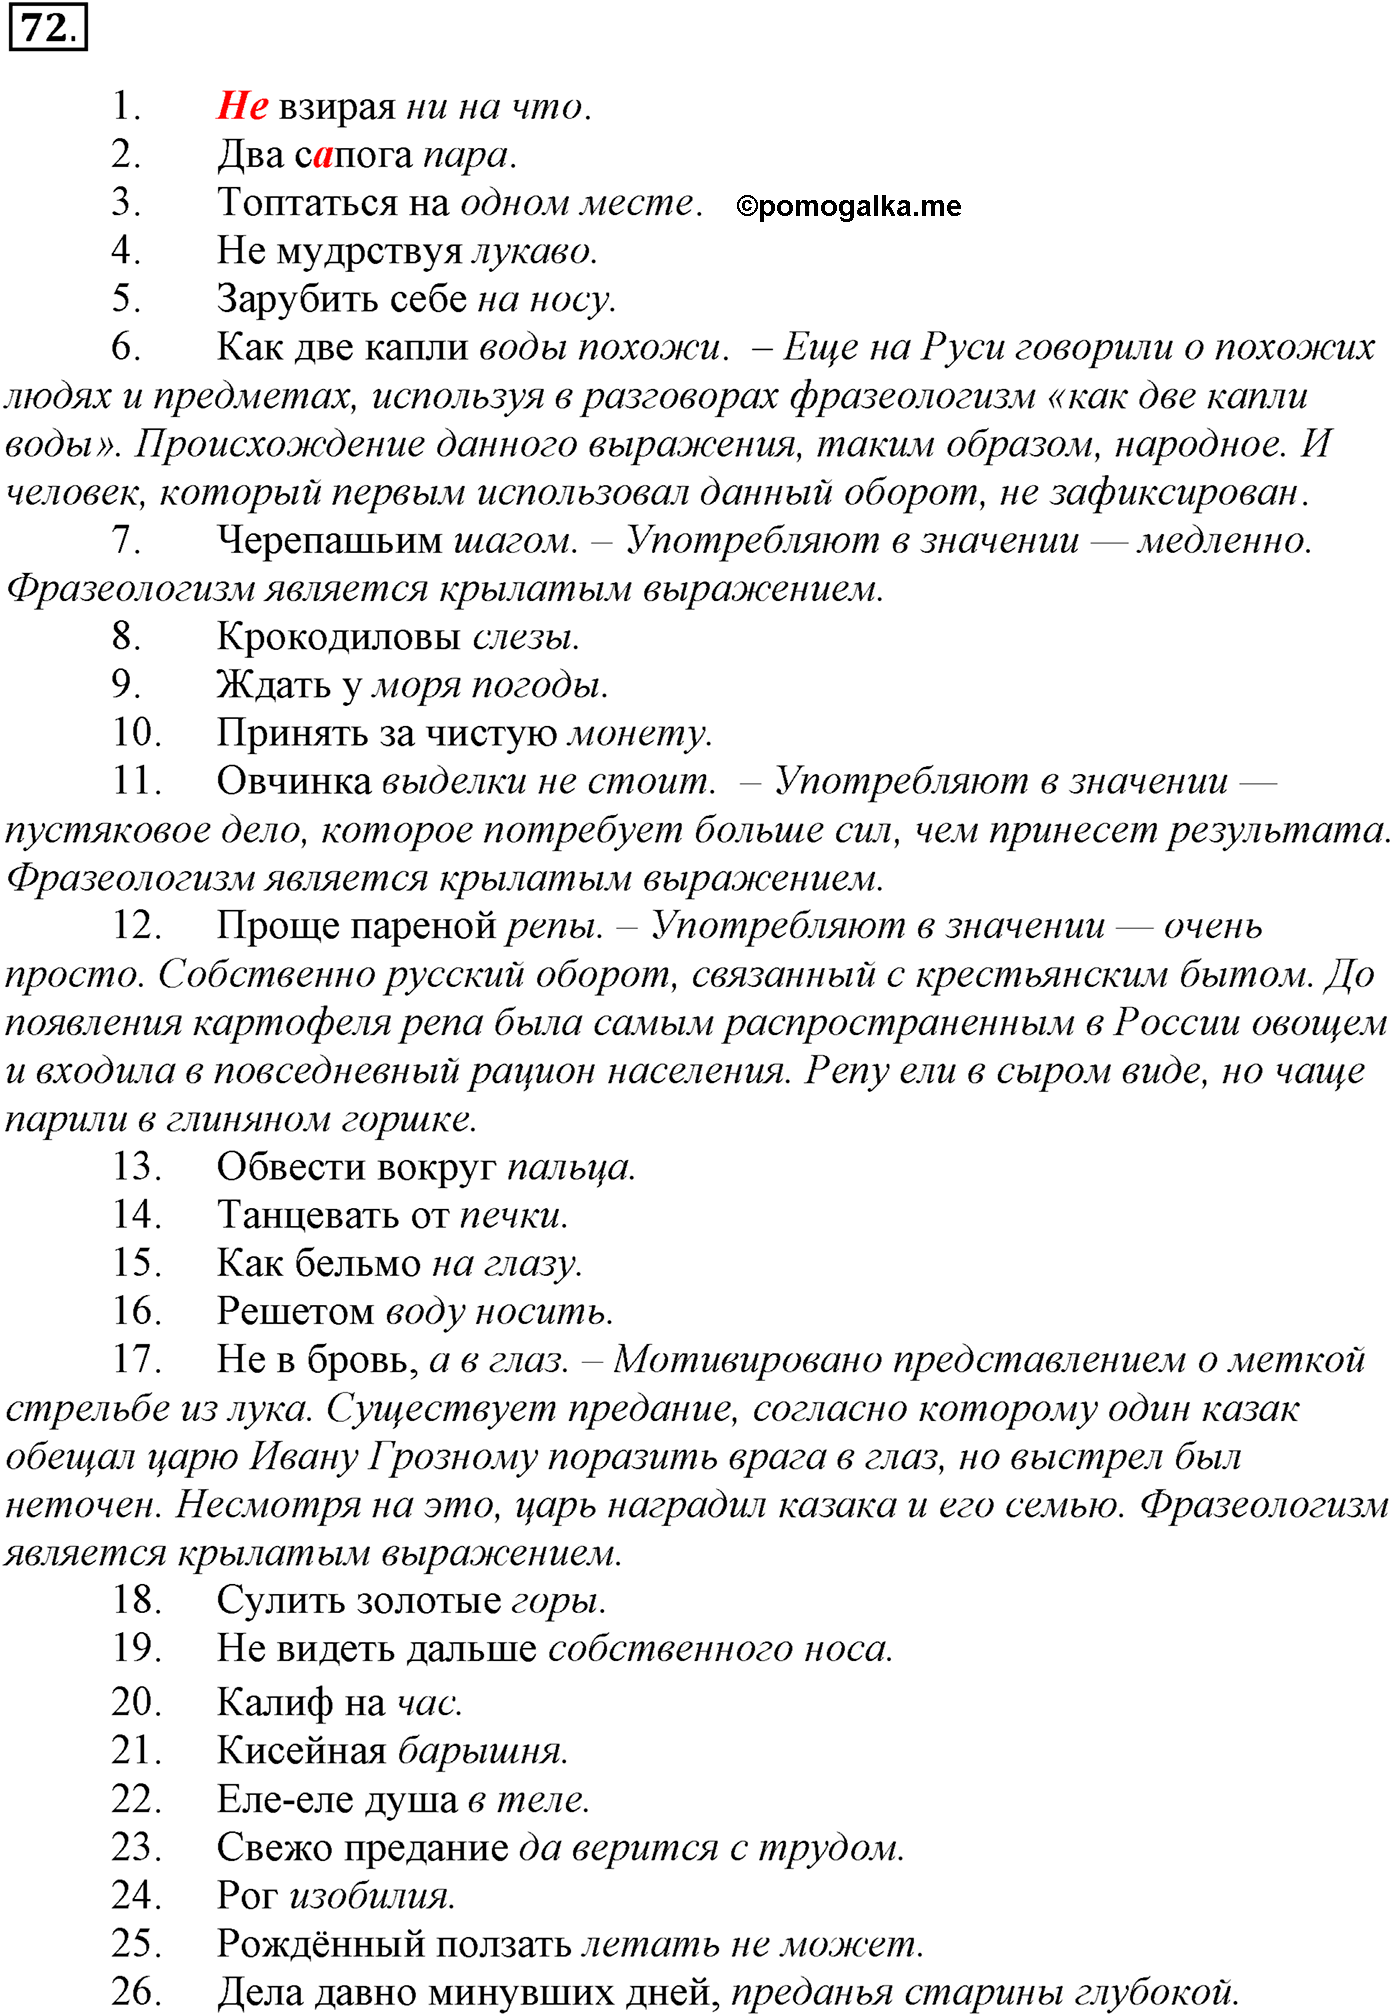 упражнение №72 русский язык 10-11 класс Власенков